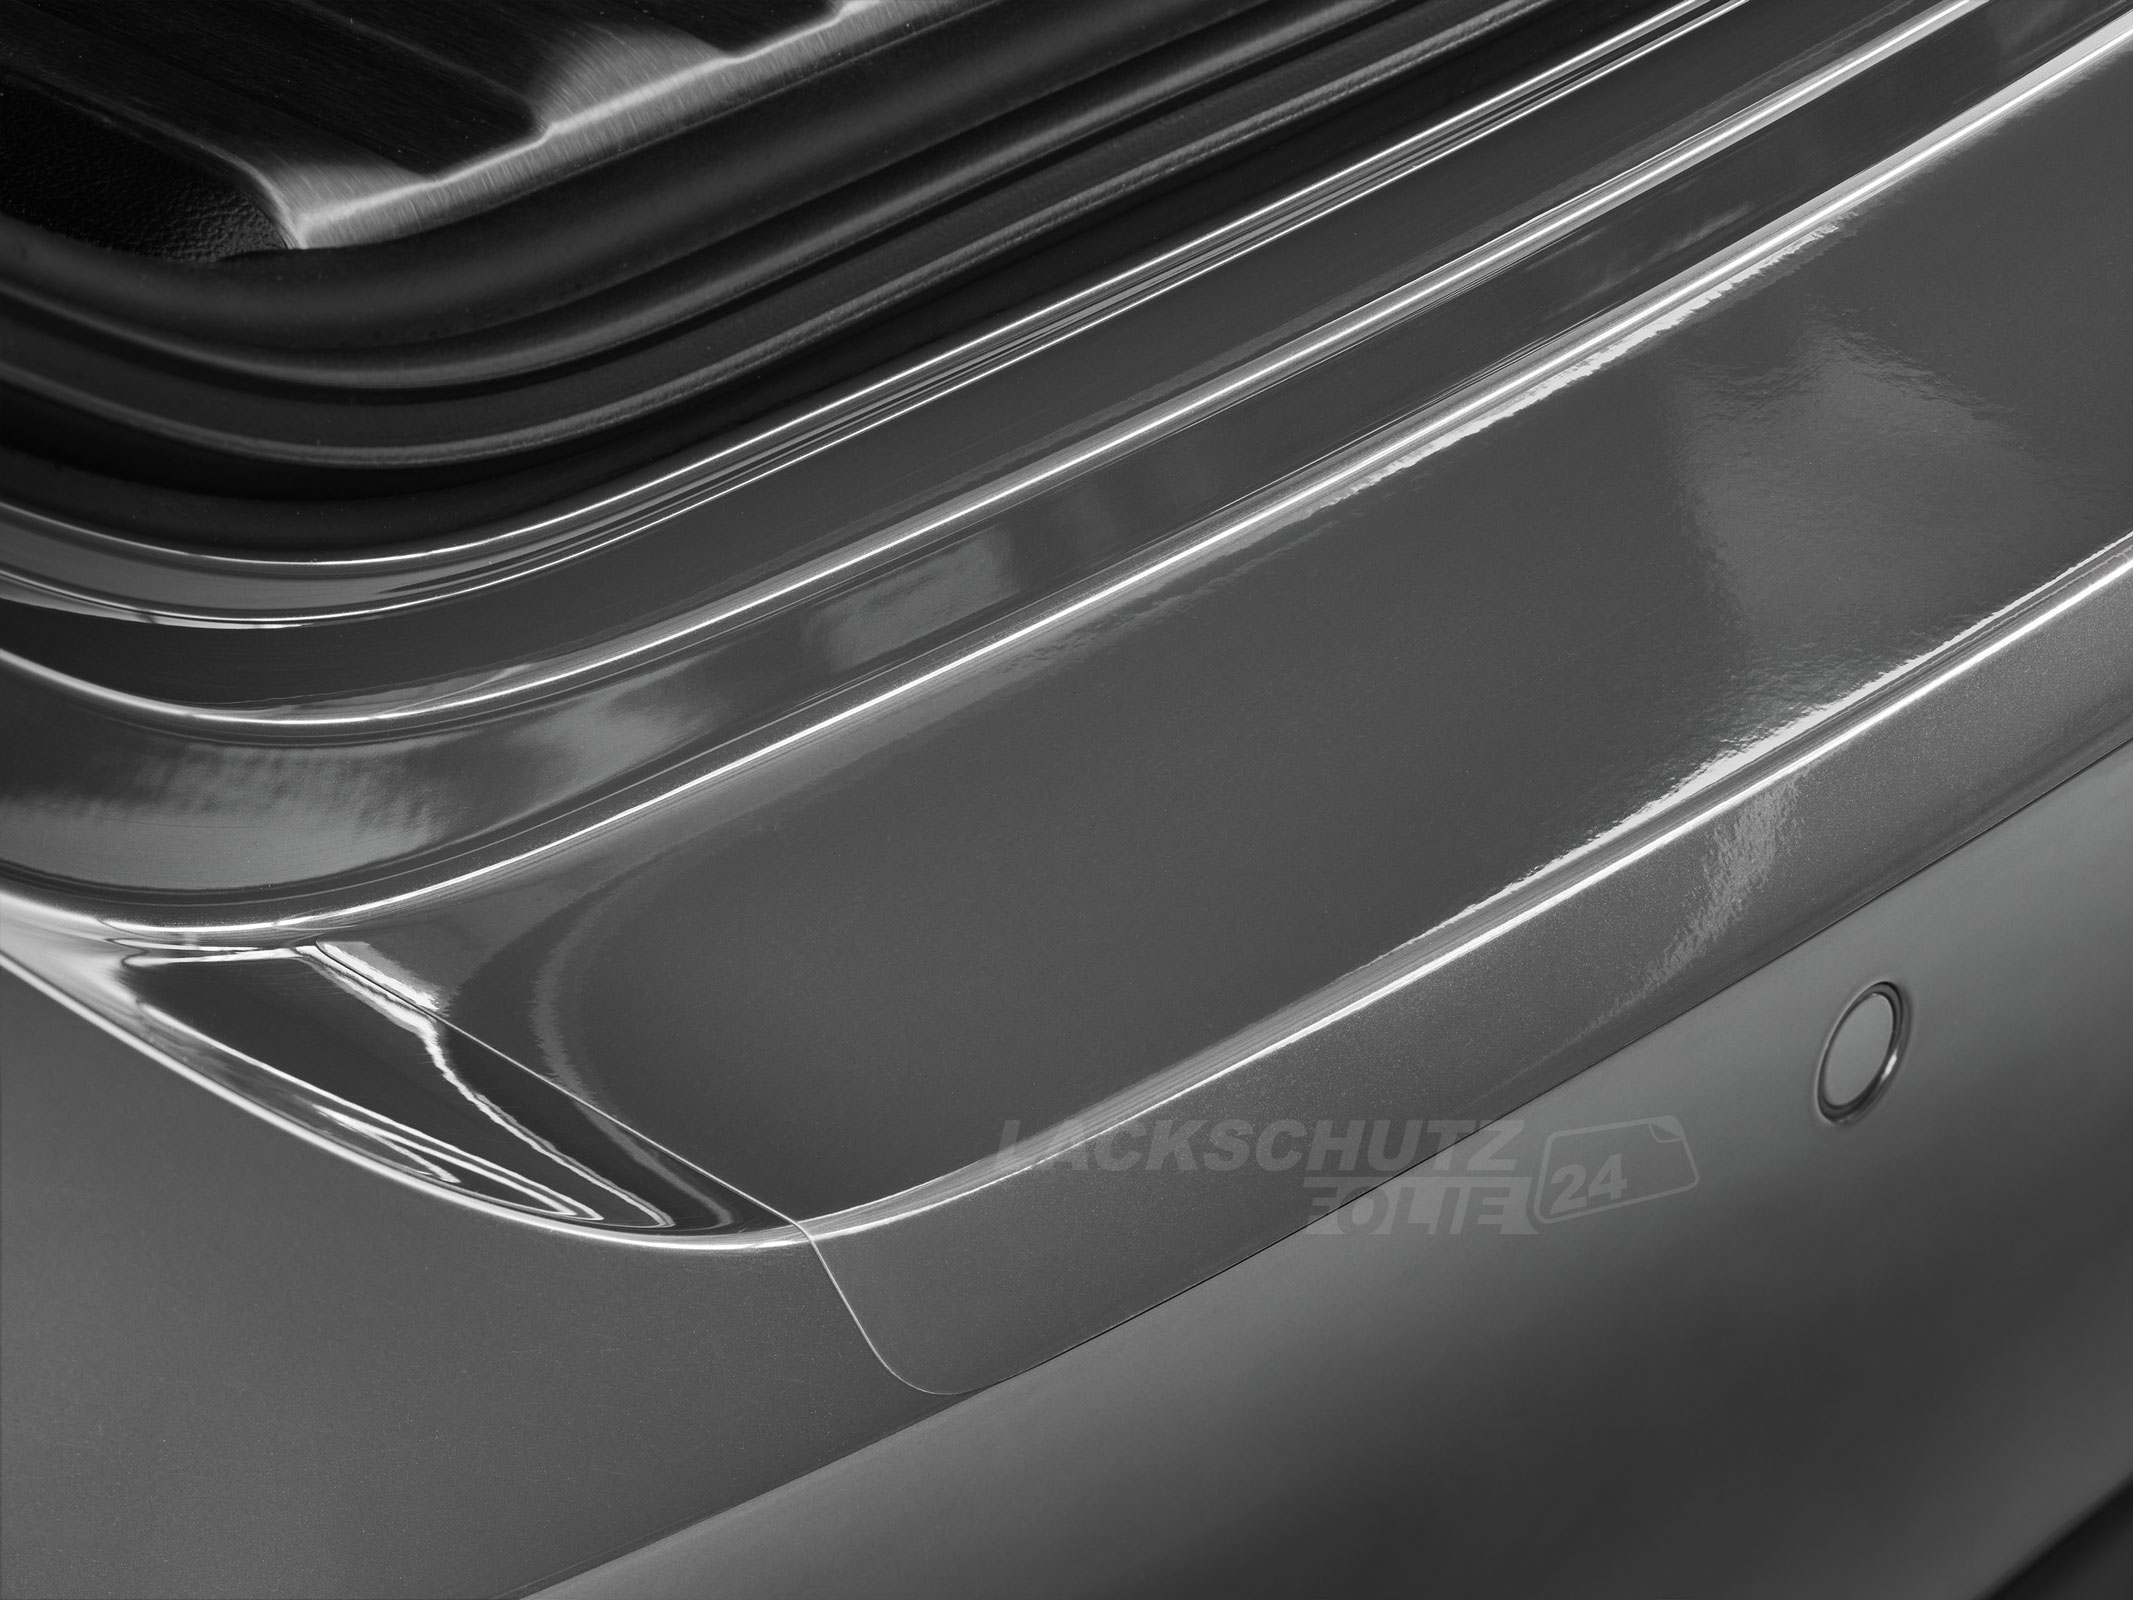 Ladekantenschutzfolie - Transparent Glatt Hochglänzend 150 µm stark für VW / Volkswagen Golf Plus ab 02/2005-2010